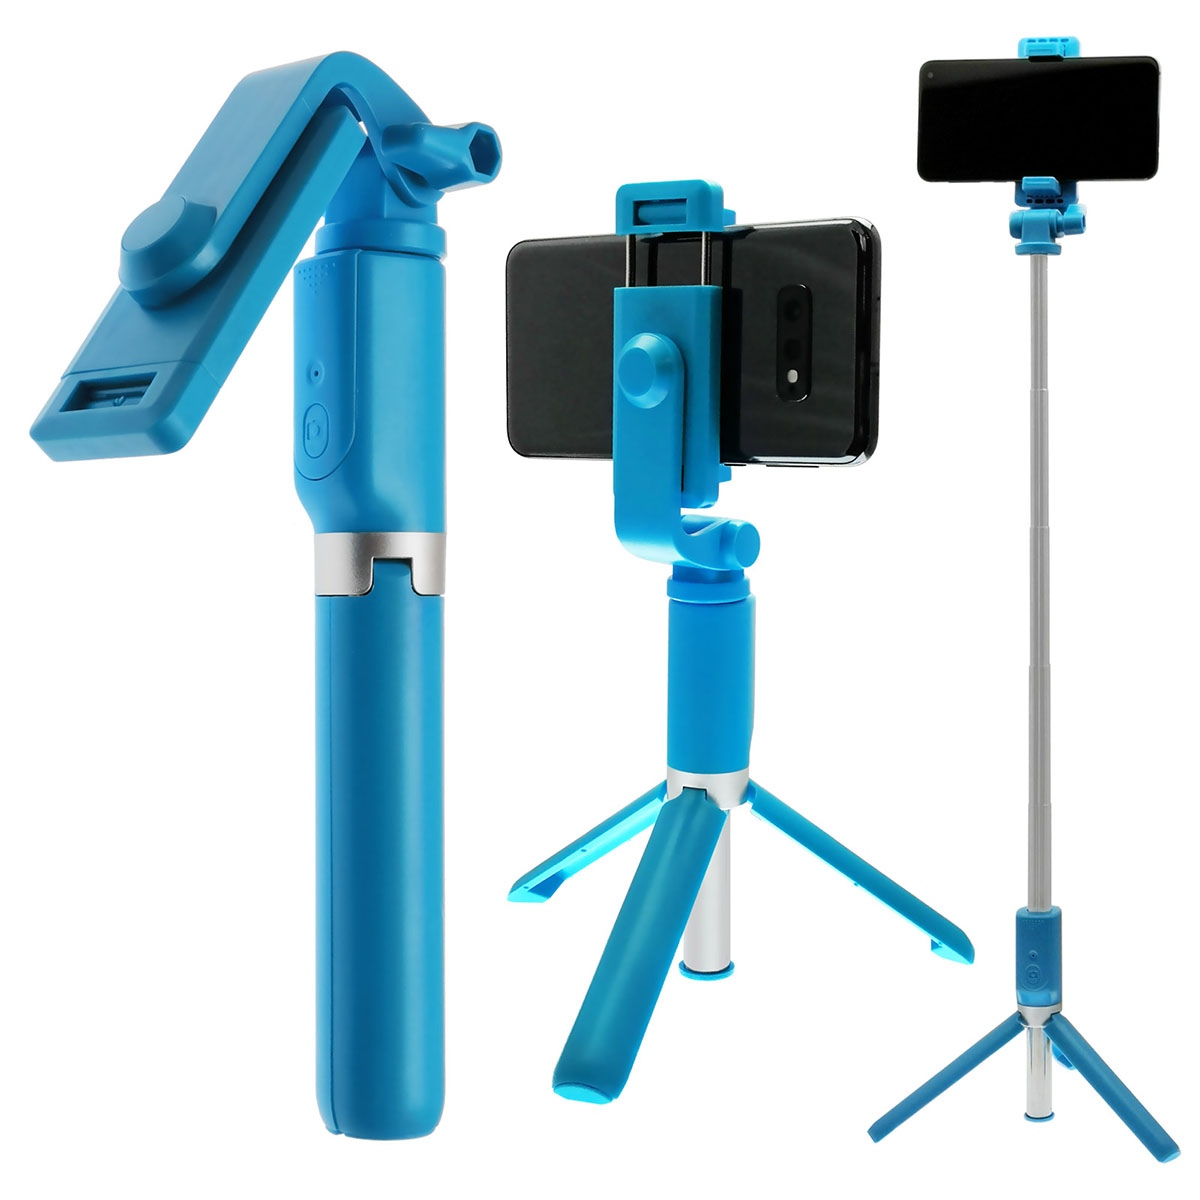 Монопод беспроводной R2 Selfie Stick Integrated Tripod, цвет синий.